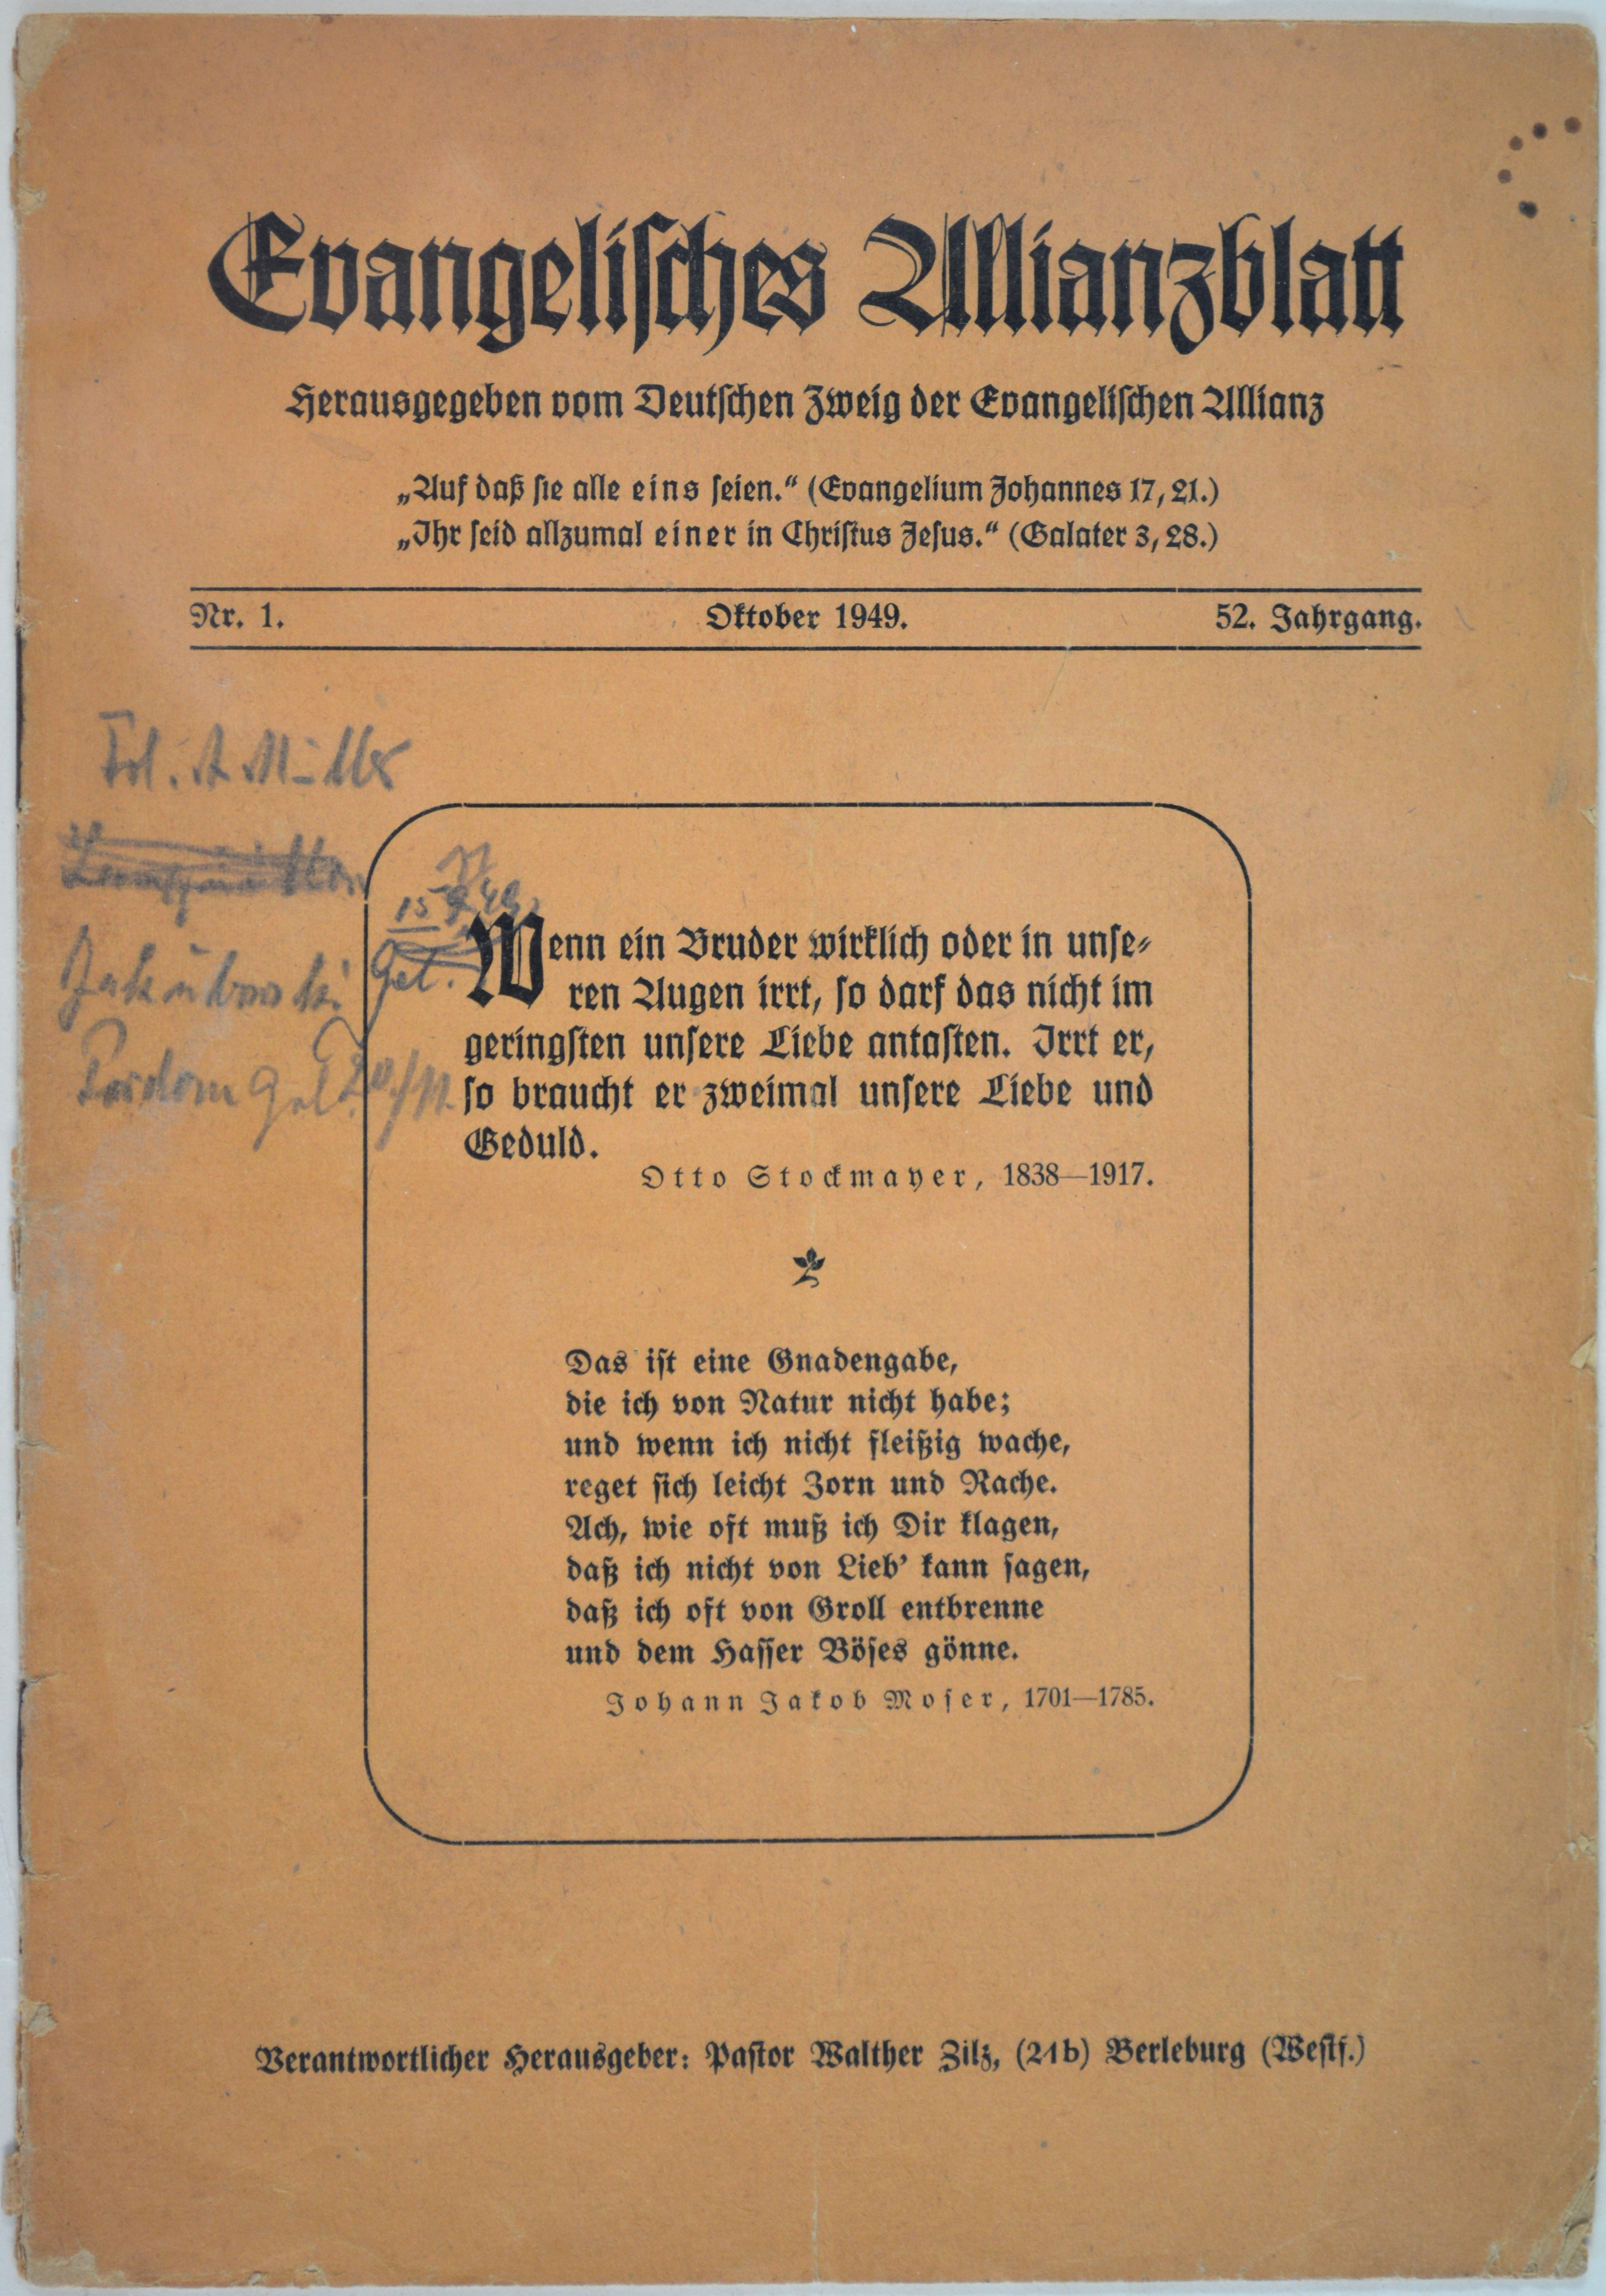 Broschüre: Evangelisches Allianzblatt, 52. Jg., Nr. 1 (Oktober 1949) (DDR Geschichtsmuseum im Dokumentationszentrum Perleberg CC BY-SA)